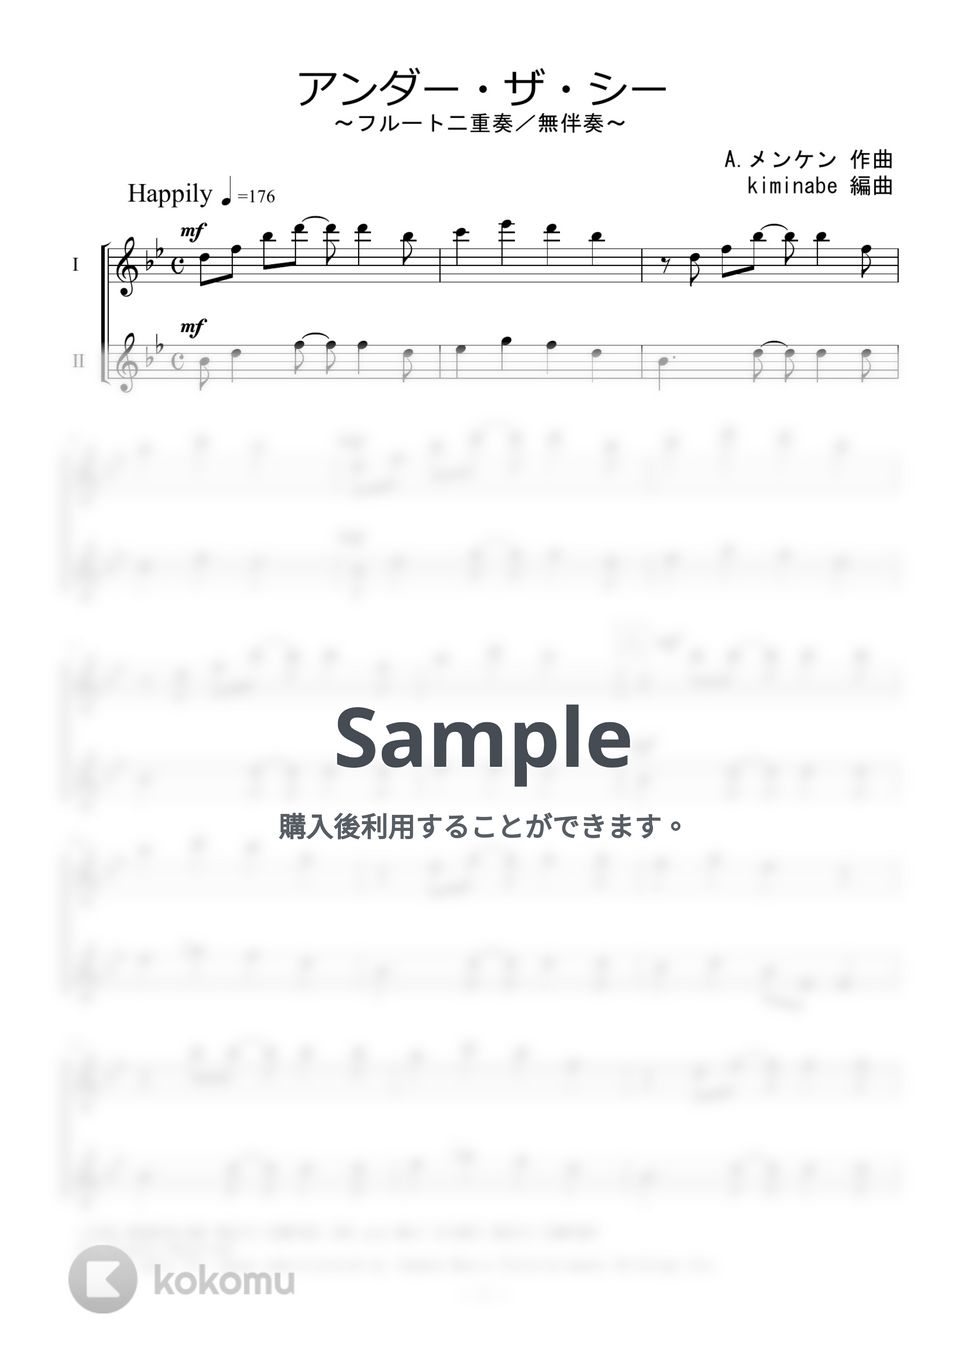 リトルマーメイド - アンダー・ザ・シー (フルート二重奏／無伴奏) by kiminabe